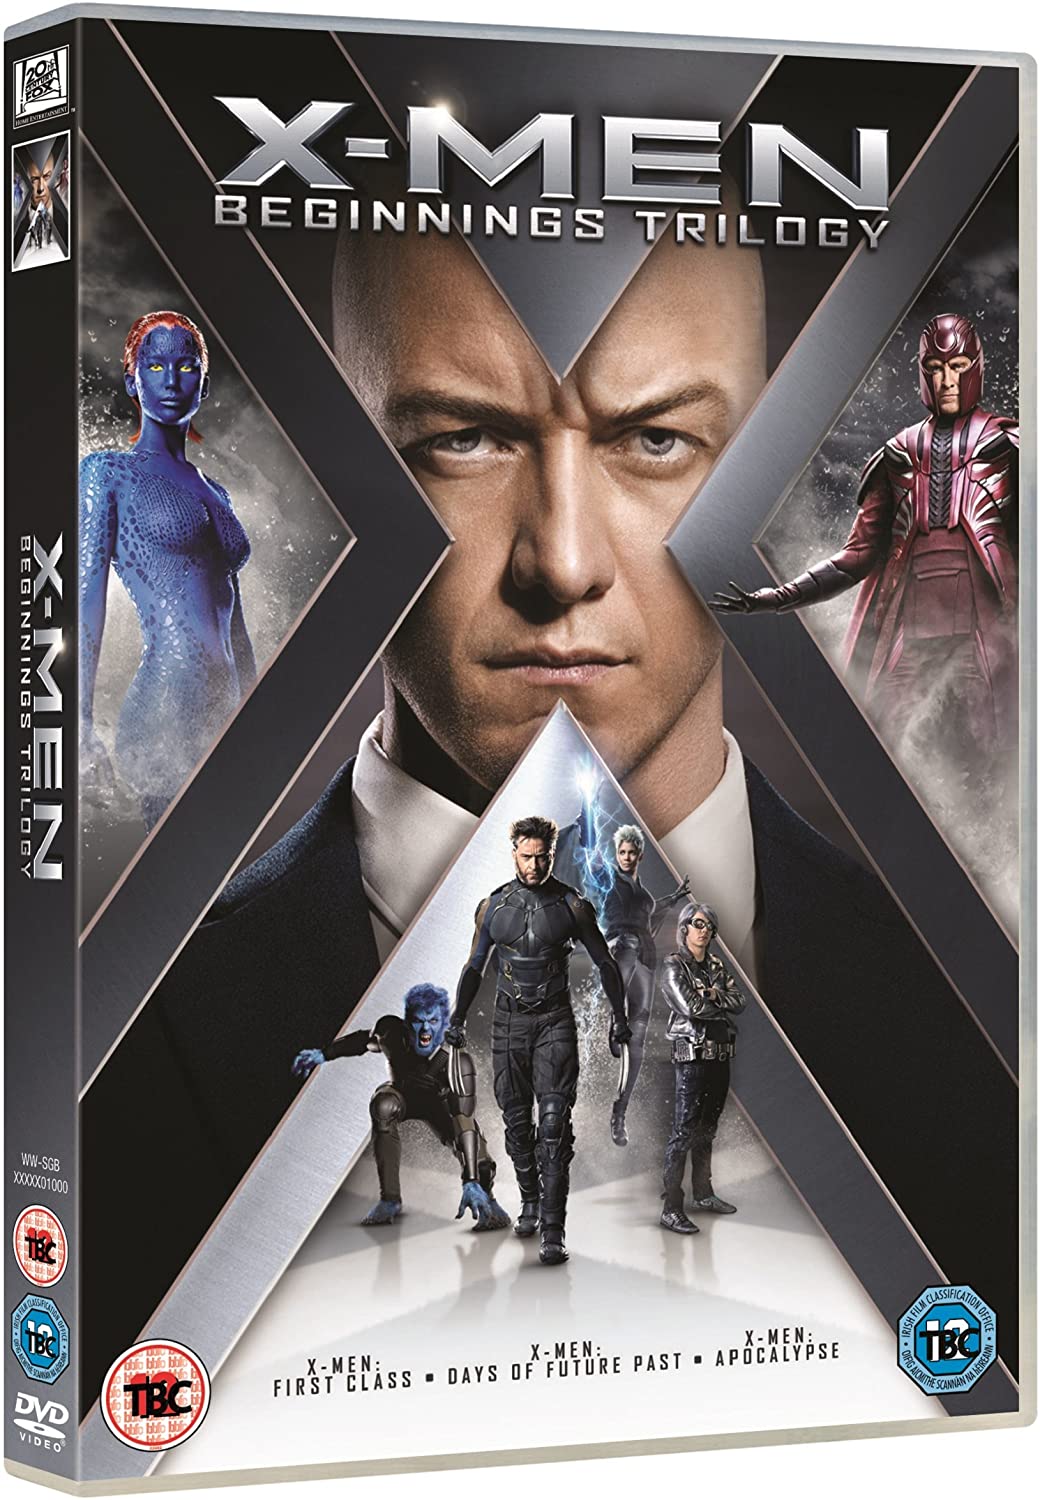 X-Men: Beginnings Trilogy - Action/Sci-fi [DVD]